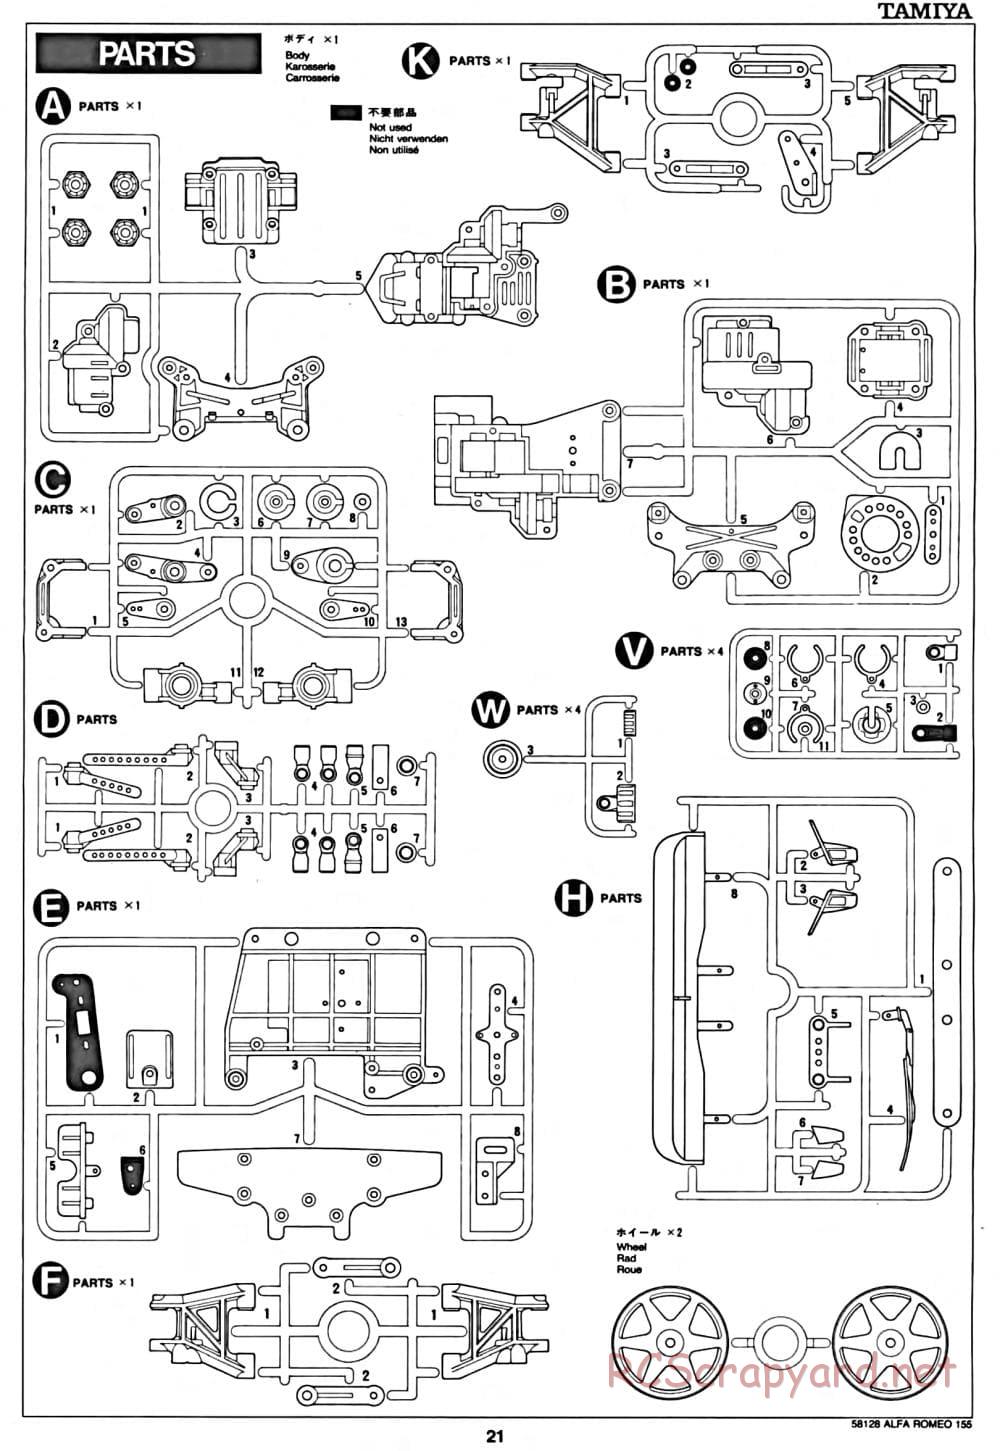 Tamiya - Alfa Romeo 155 V6 TI - TA-02 Chassis - Manual - Page 21